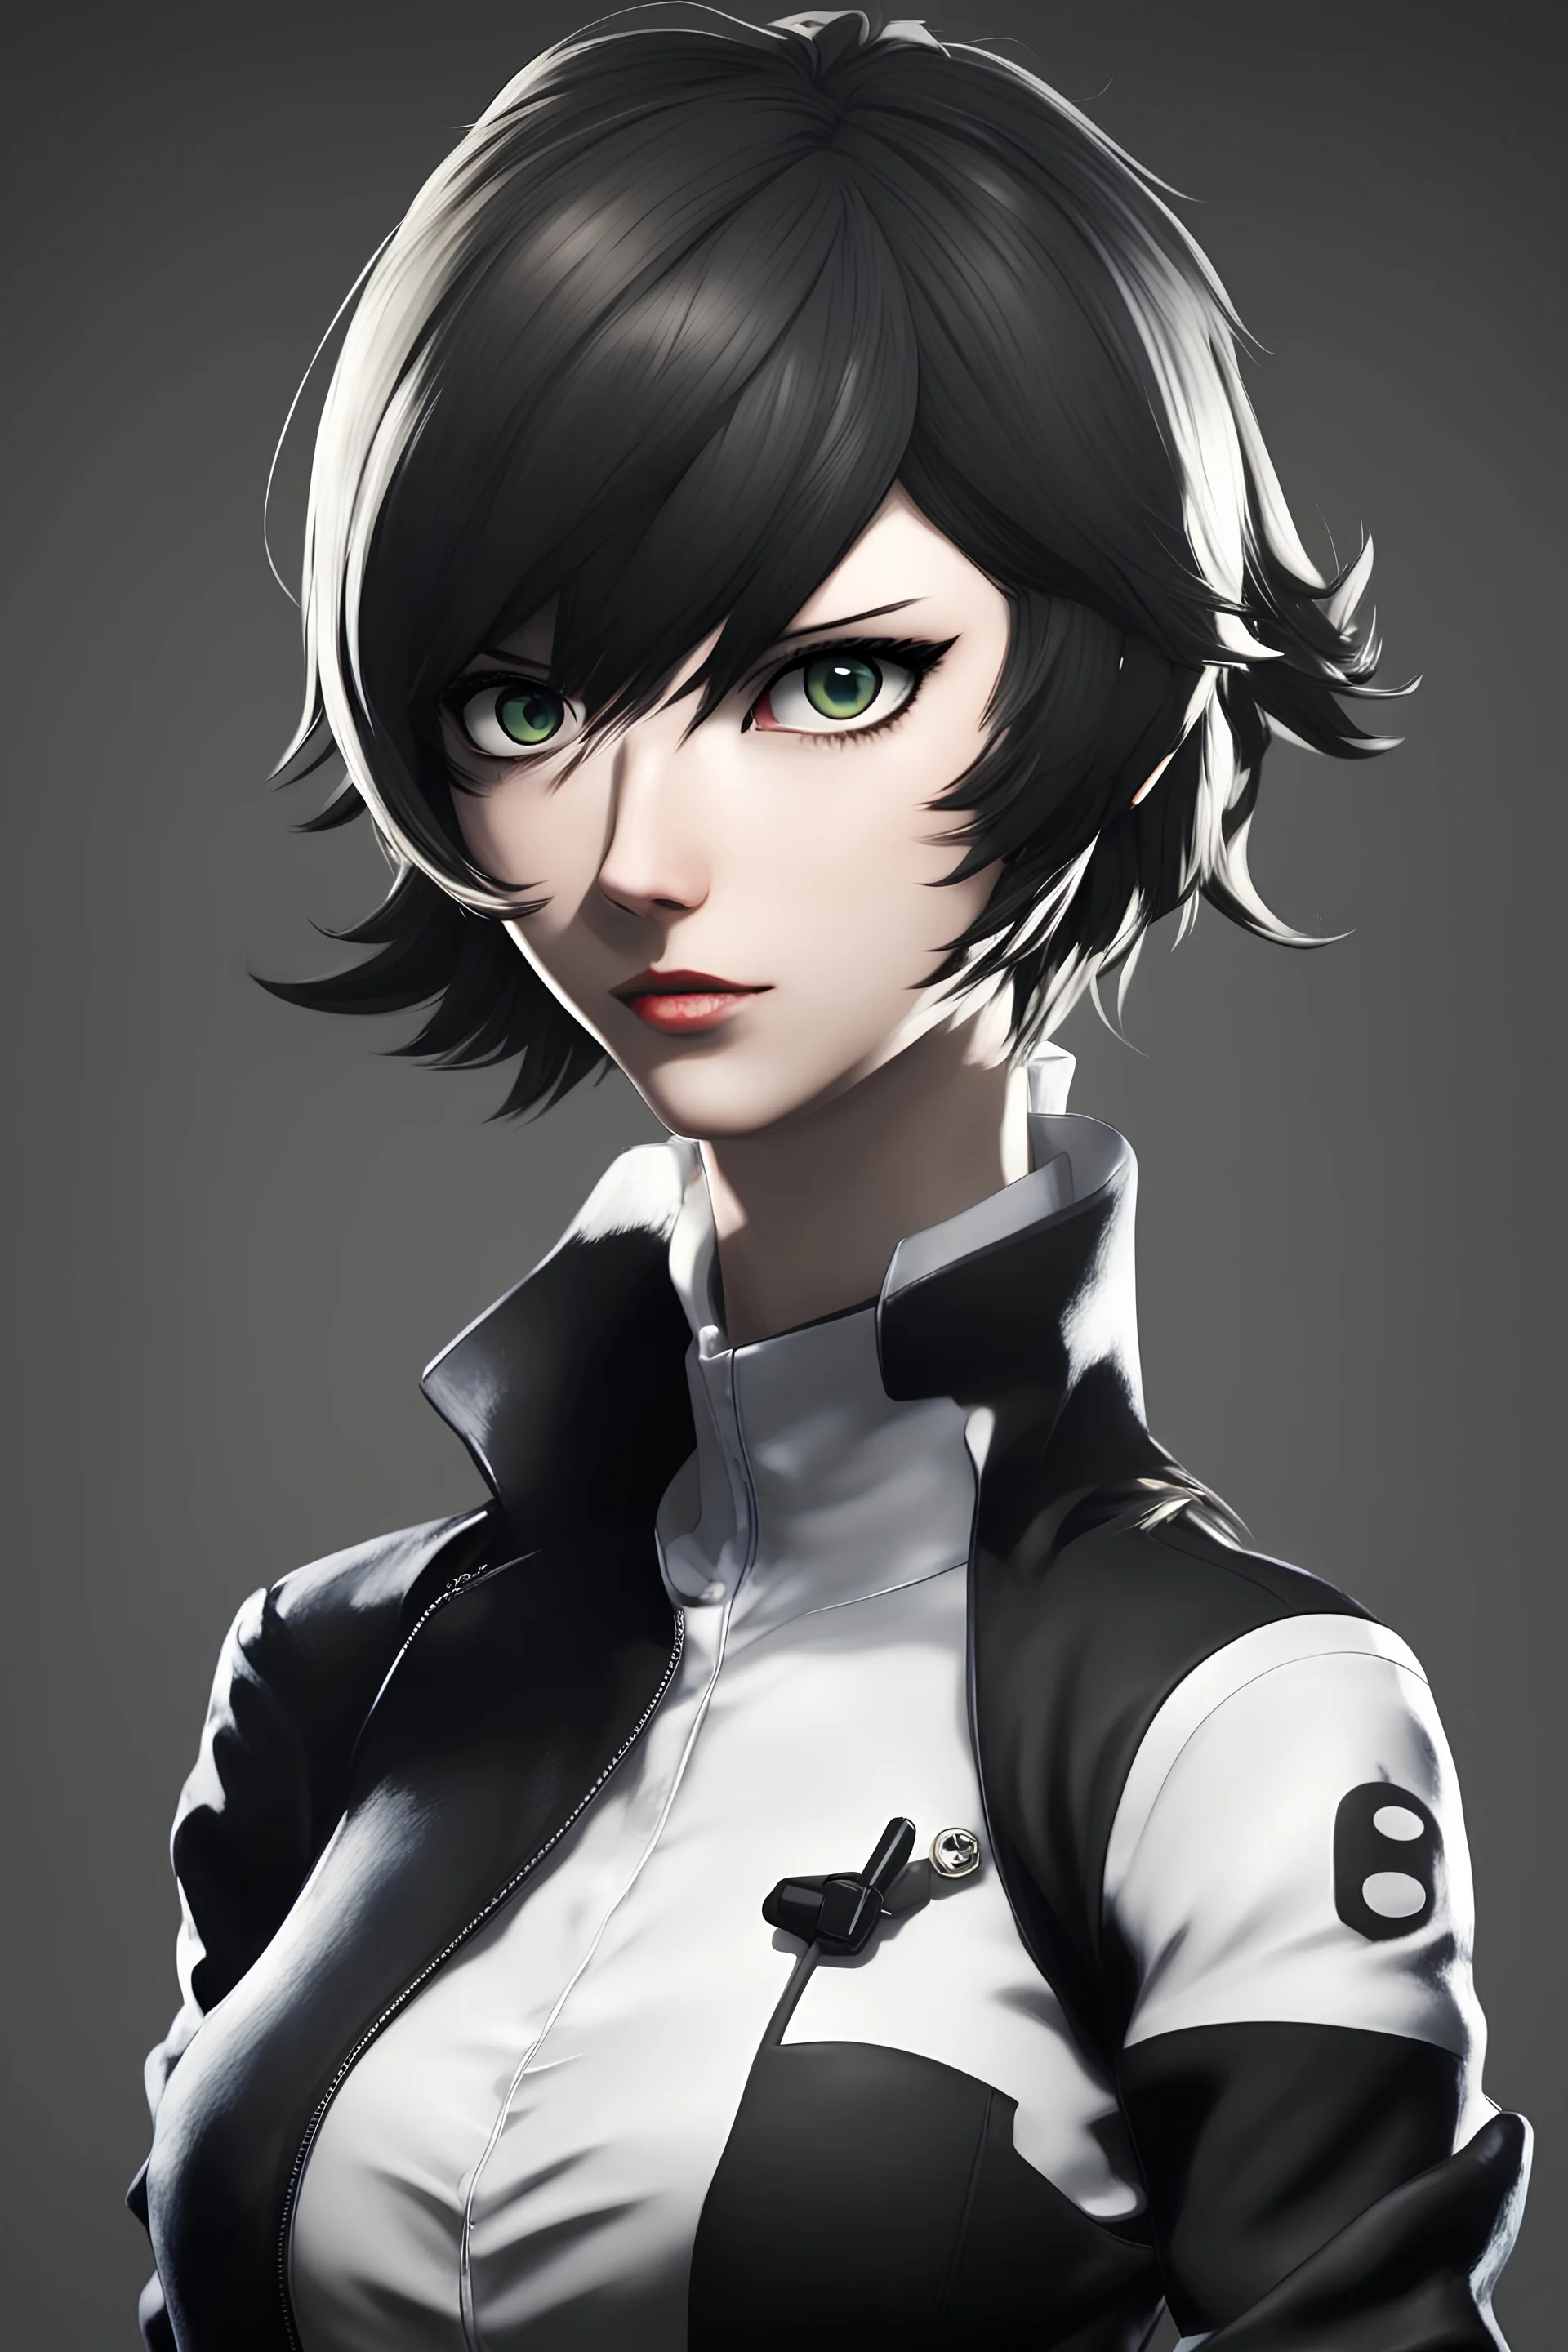 personaggio femminile in stile videogioco Persona 5